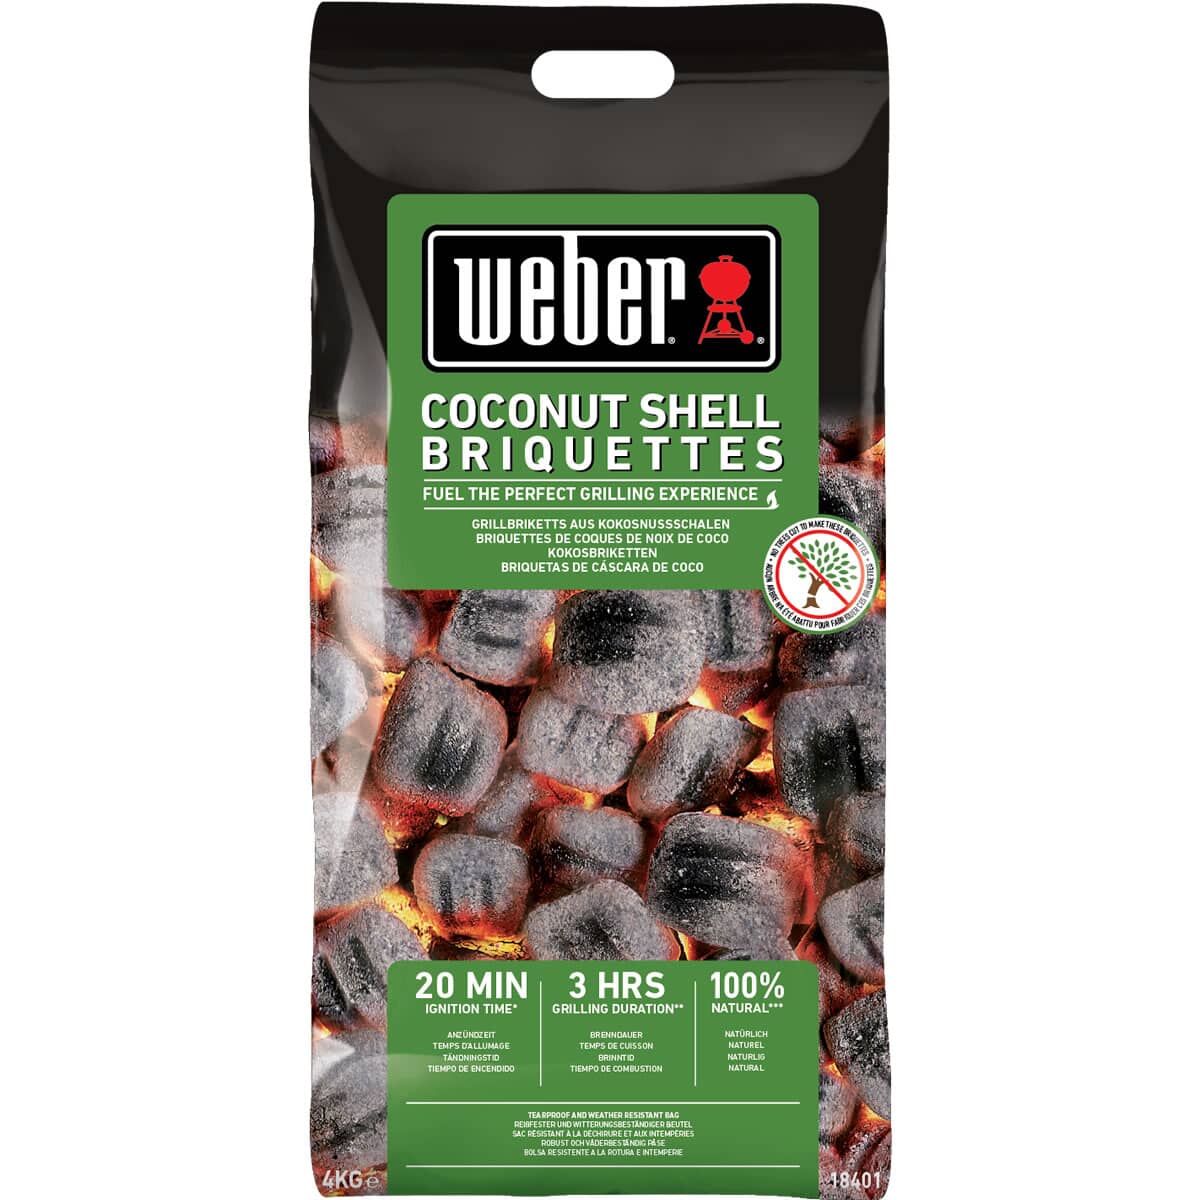 Weber Coconut Shell Briquettes - 4kg